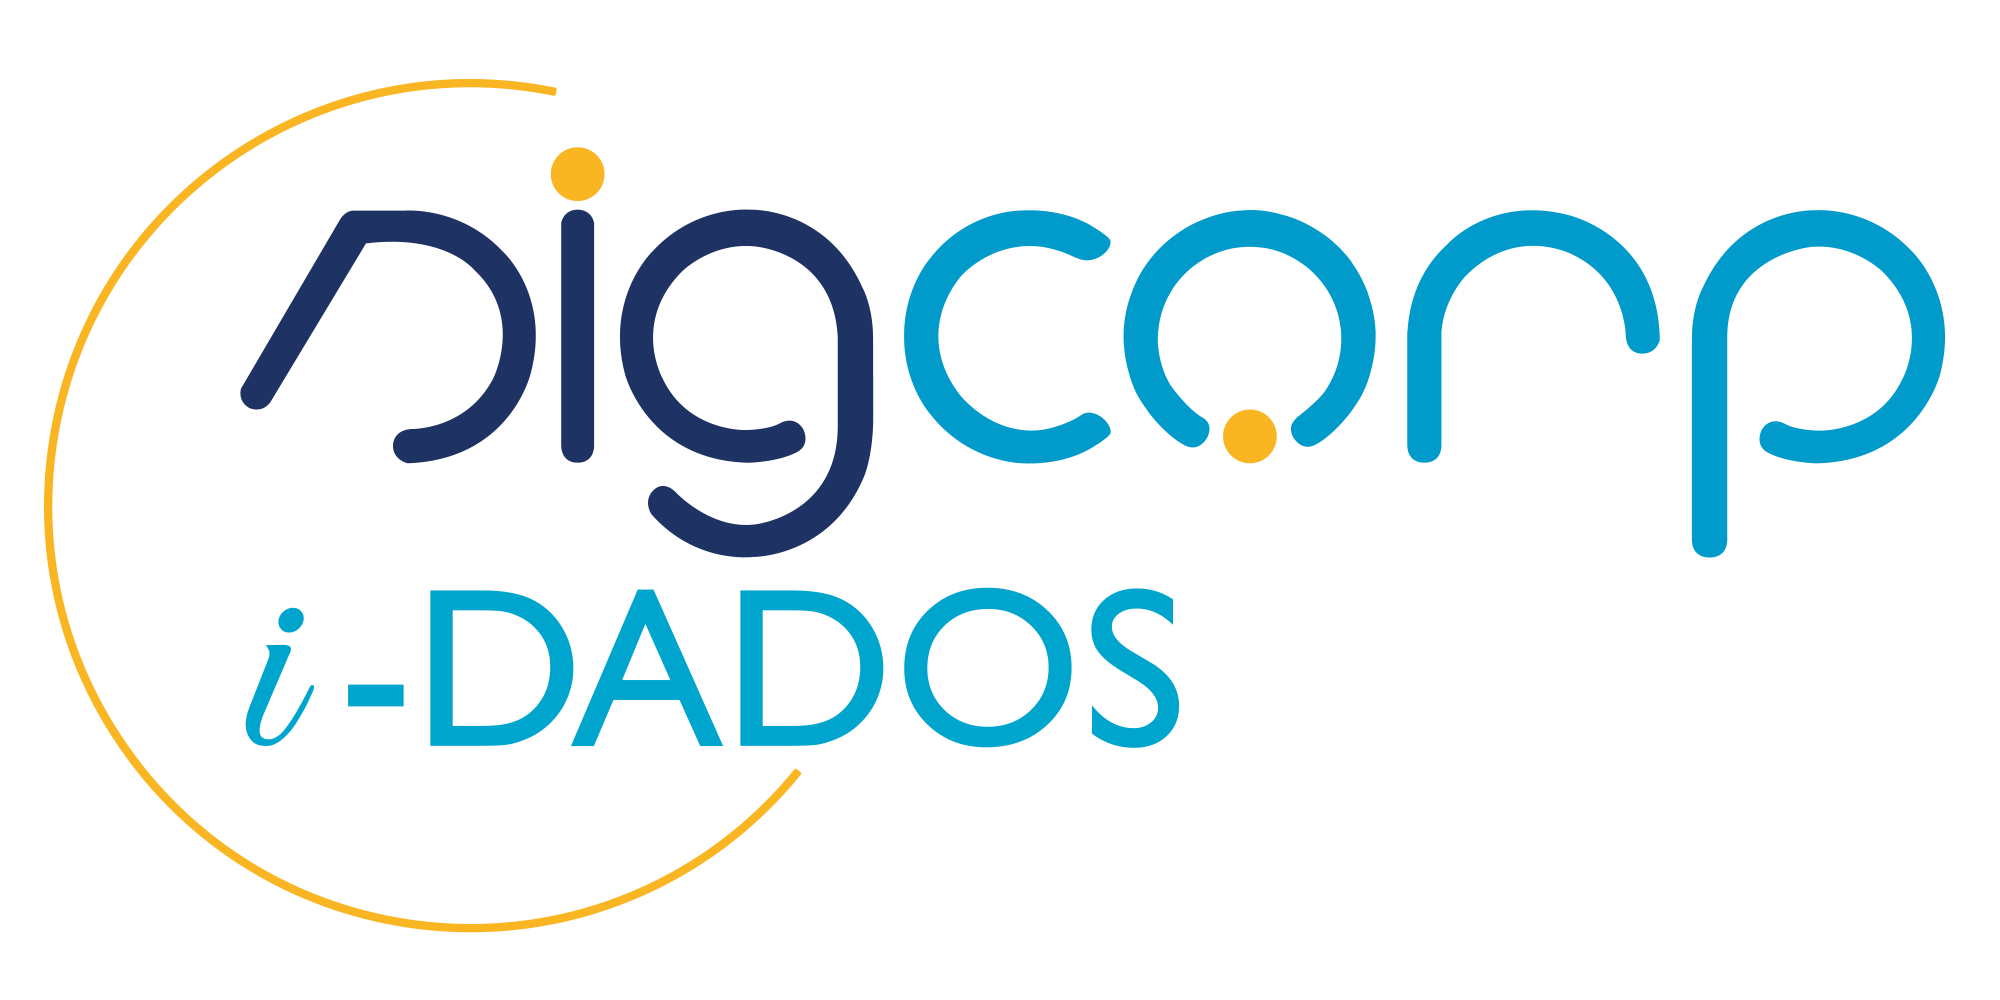 Logo Sigcorp I Dados